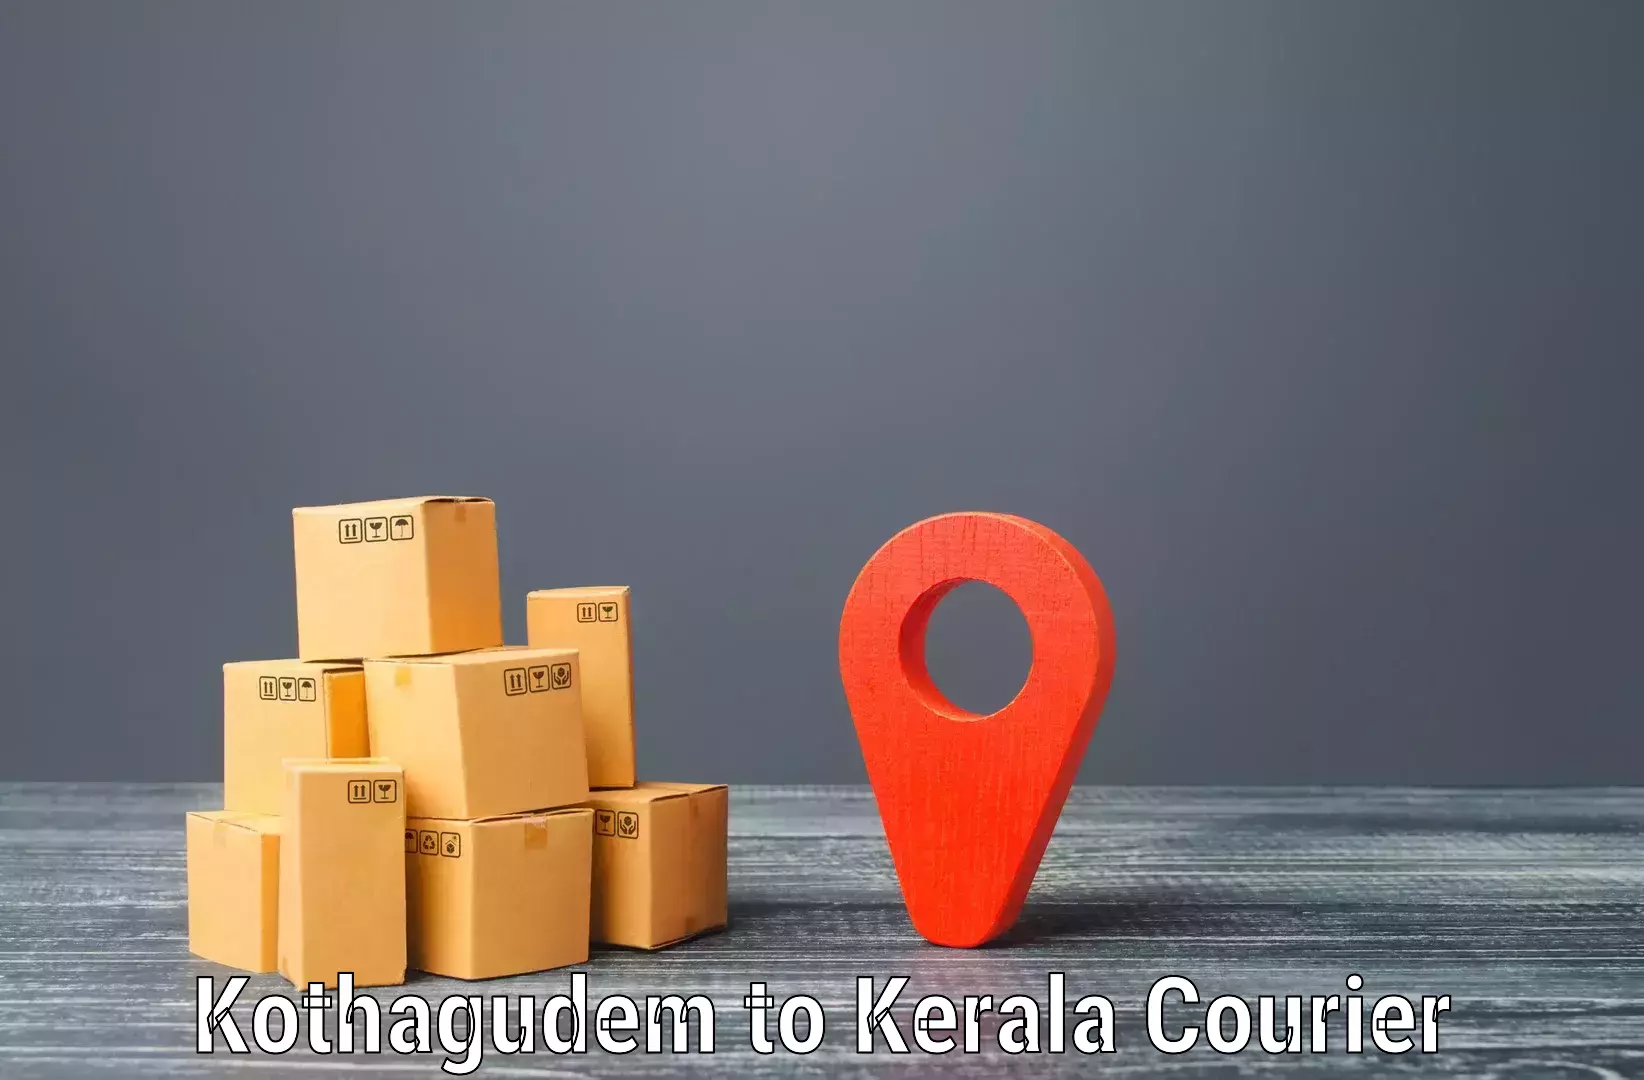 Local delivery service Kothagudem to Tirur